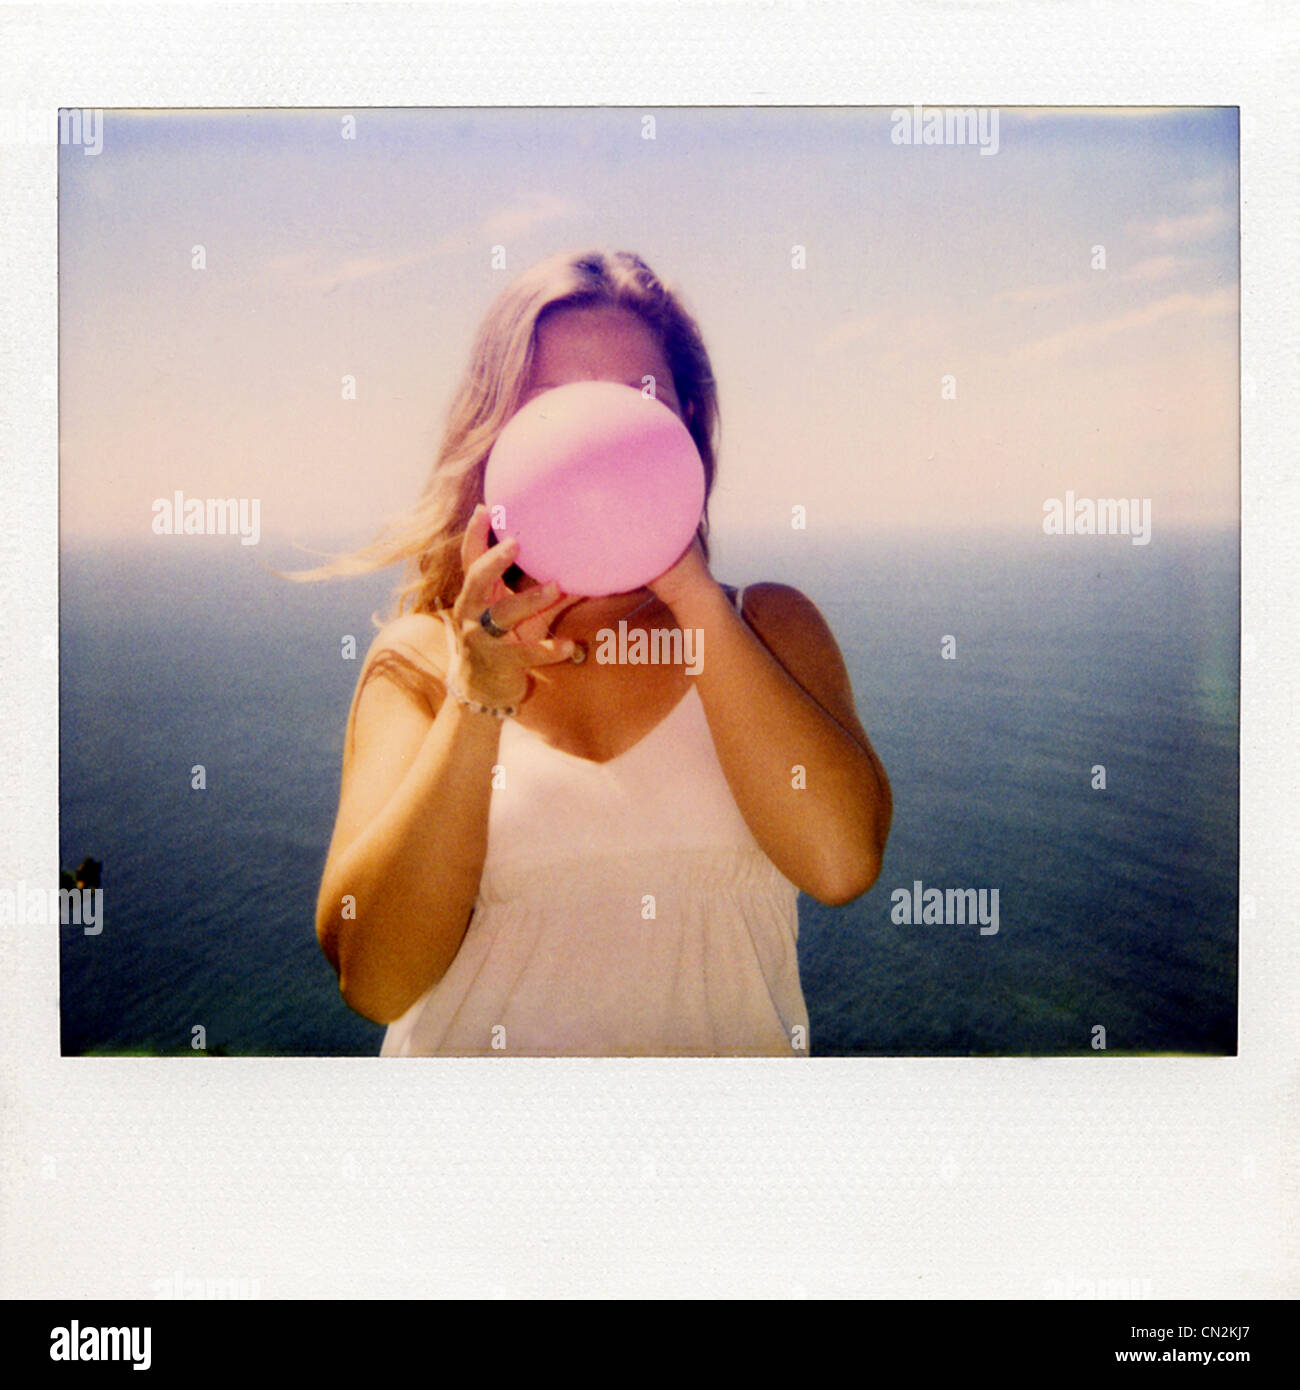 Photographie instantanée film de woman Blowing up balloon Banque D'Images